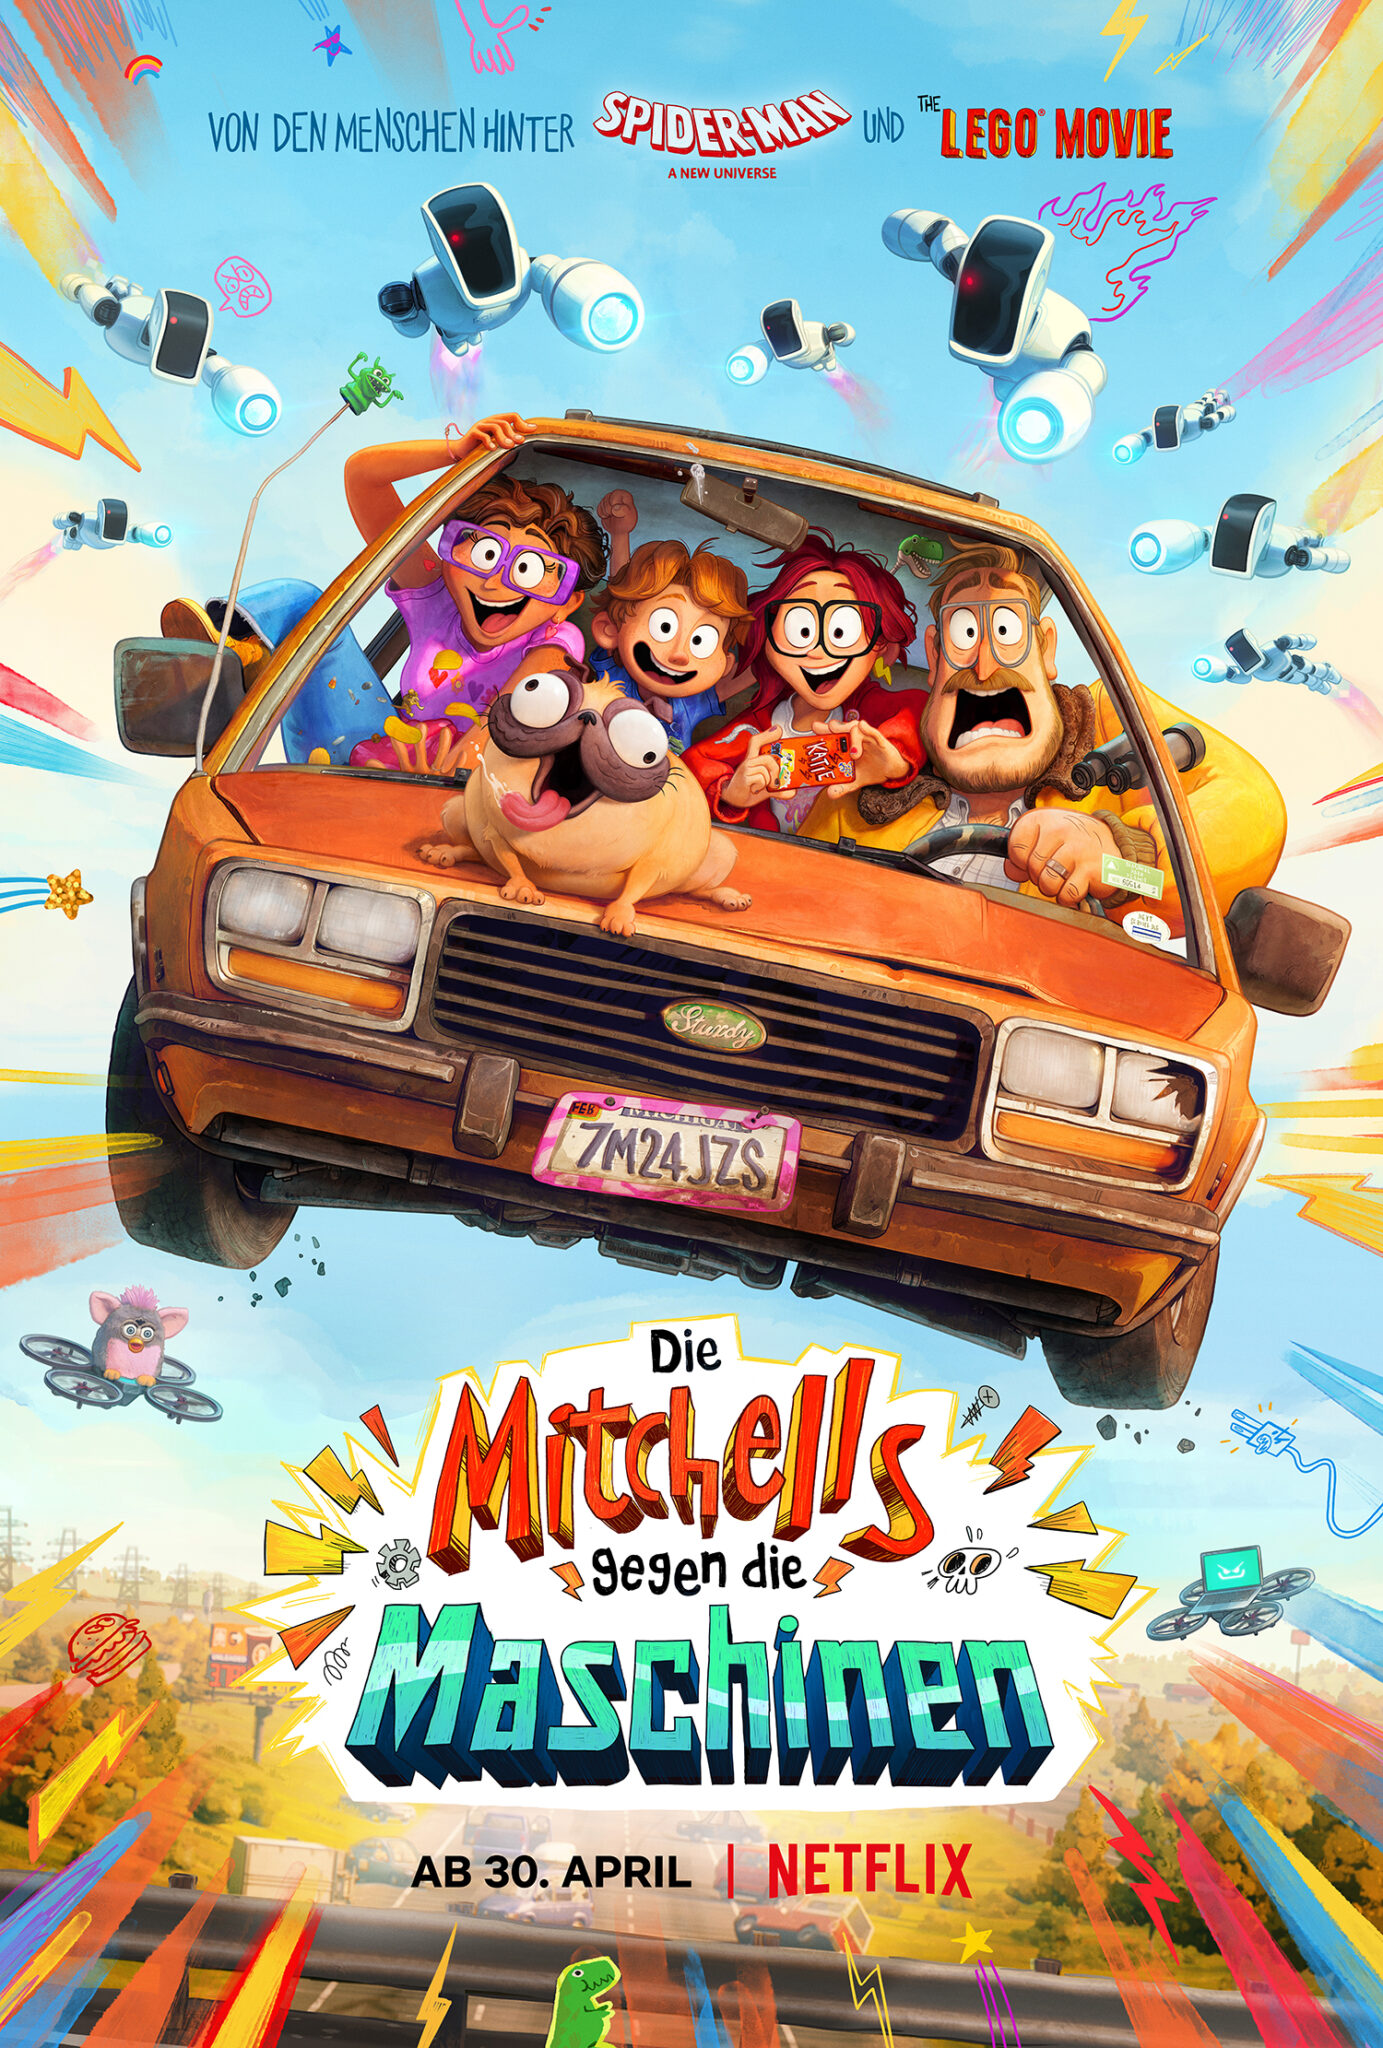 Das Poster des Films Die Mitchells gegen die Maschinen zeigt die Familie Mitchell in einem abgehobenen Auto im Mittelpunkt. Rundherum sieht man den Titel sowie einige Comic-Blitze und oben im Bild sieben fliegende Roboter.